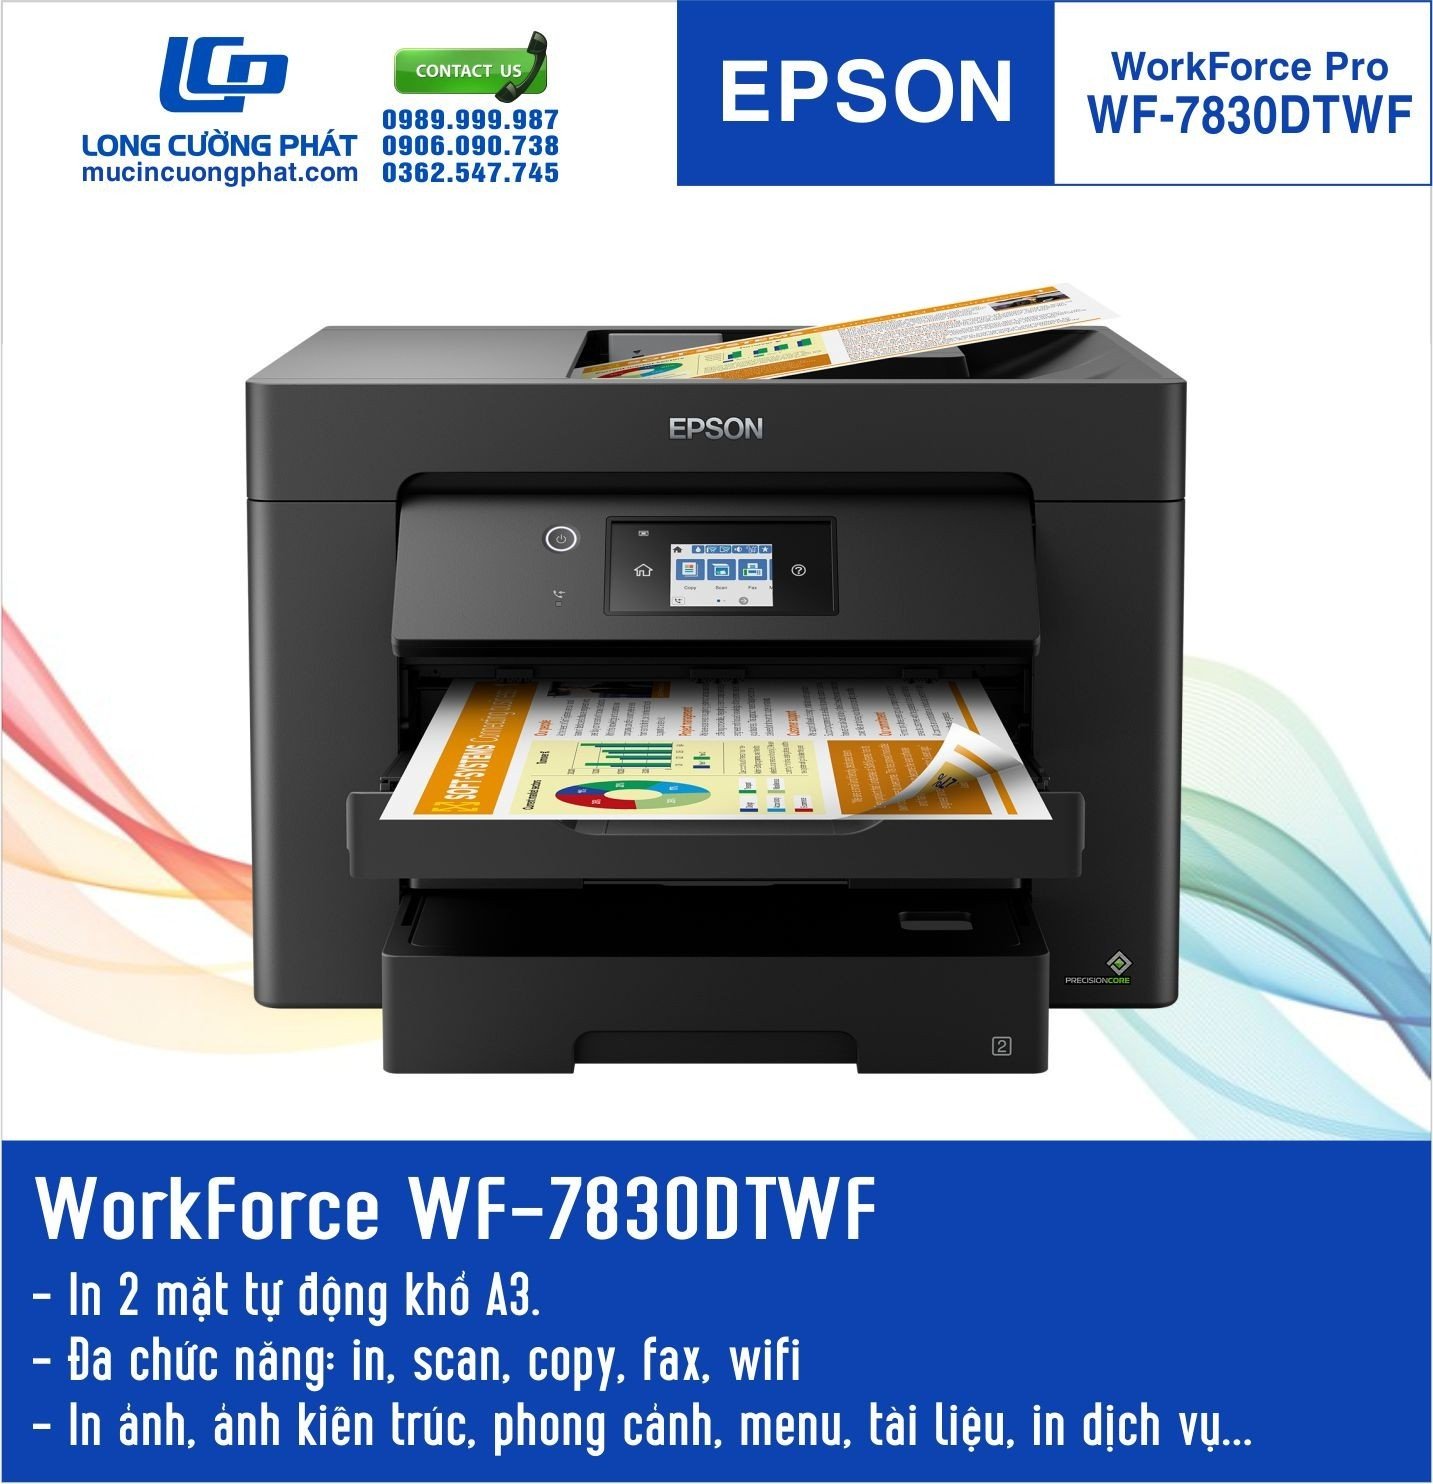 Máy in Epson workforce wf-7830 với tính năng scan 2 mặt, copy 2 mặt, in 2 mặt tiện dụng cho văn phòng in ấn